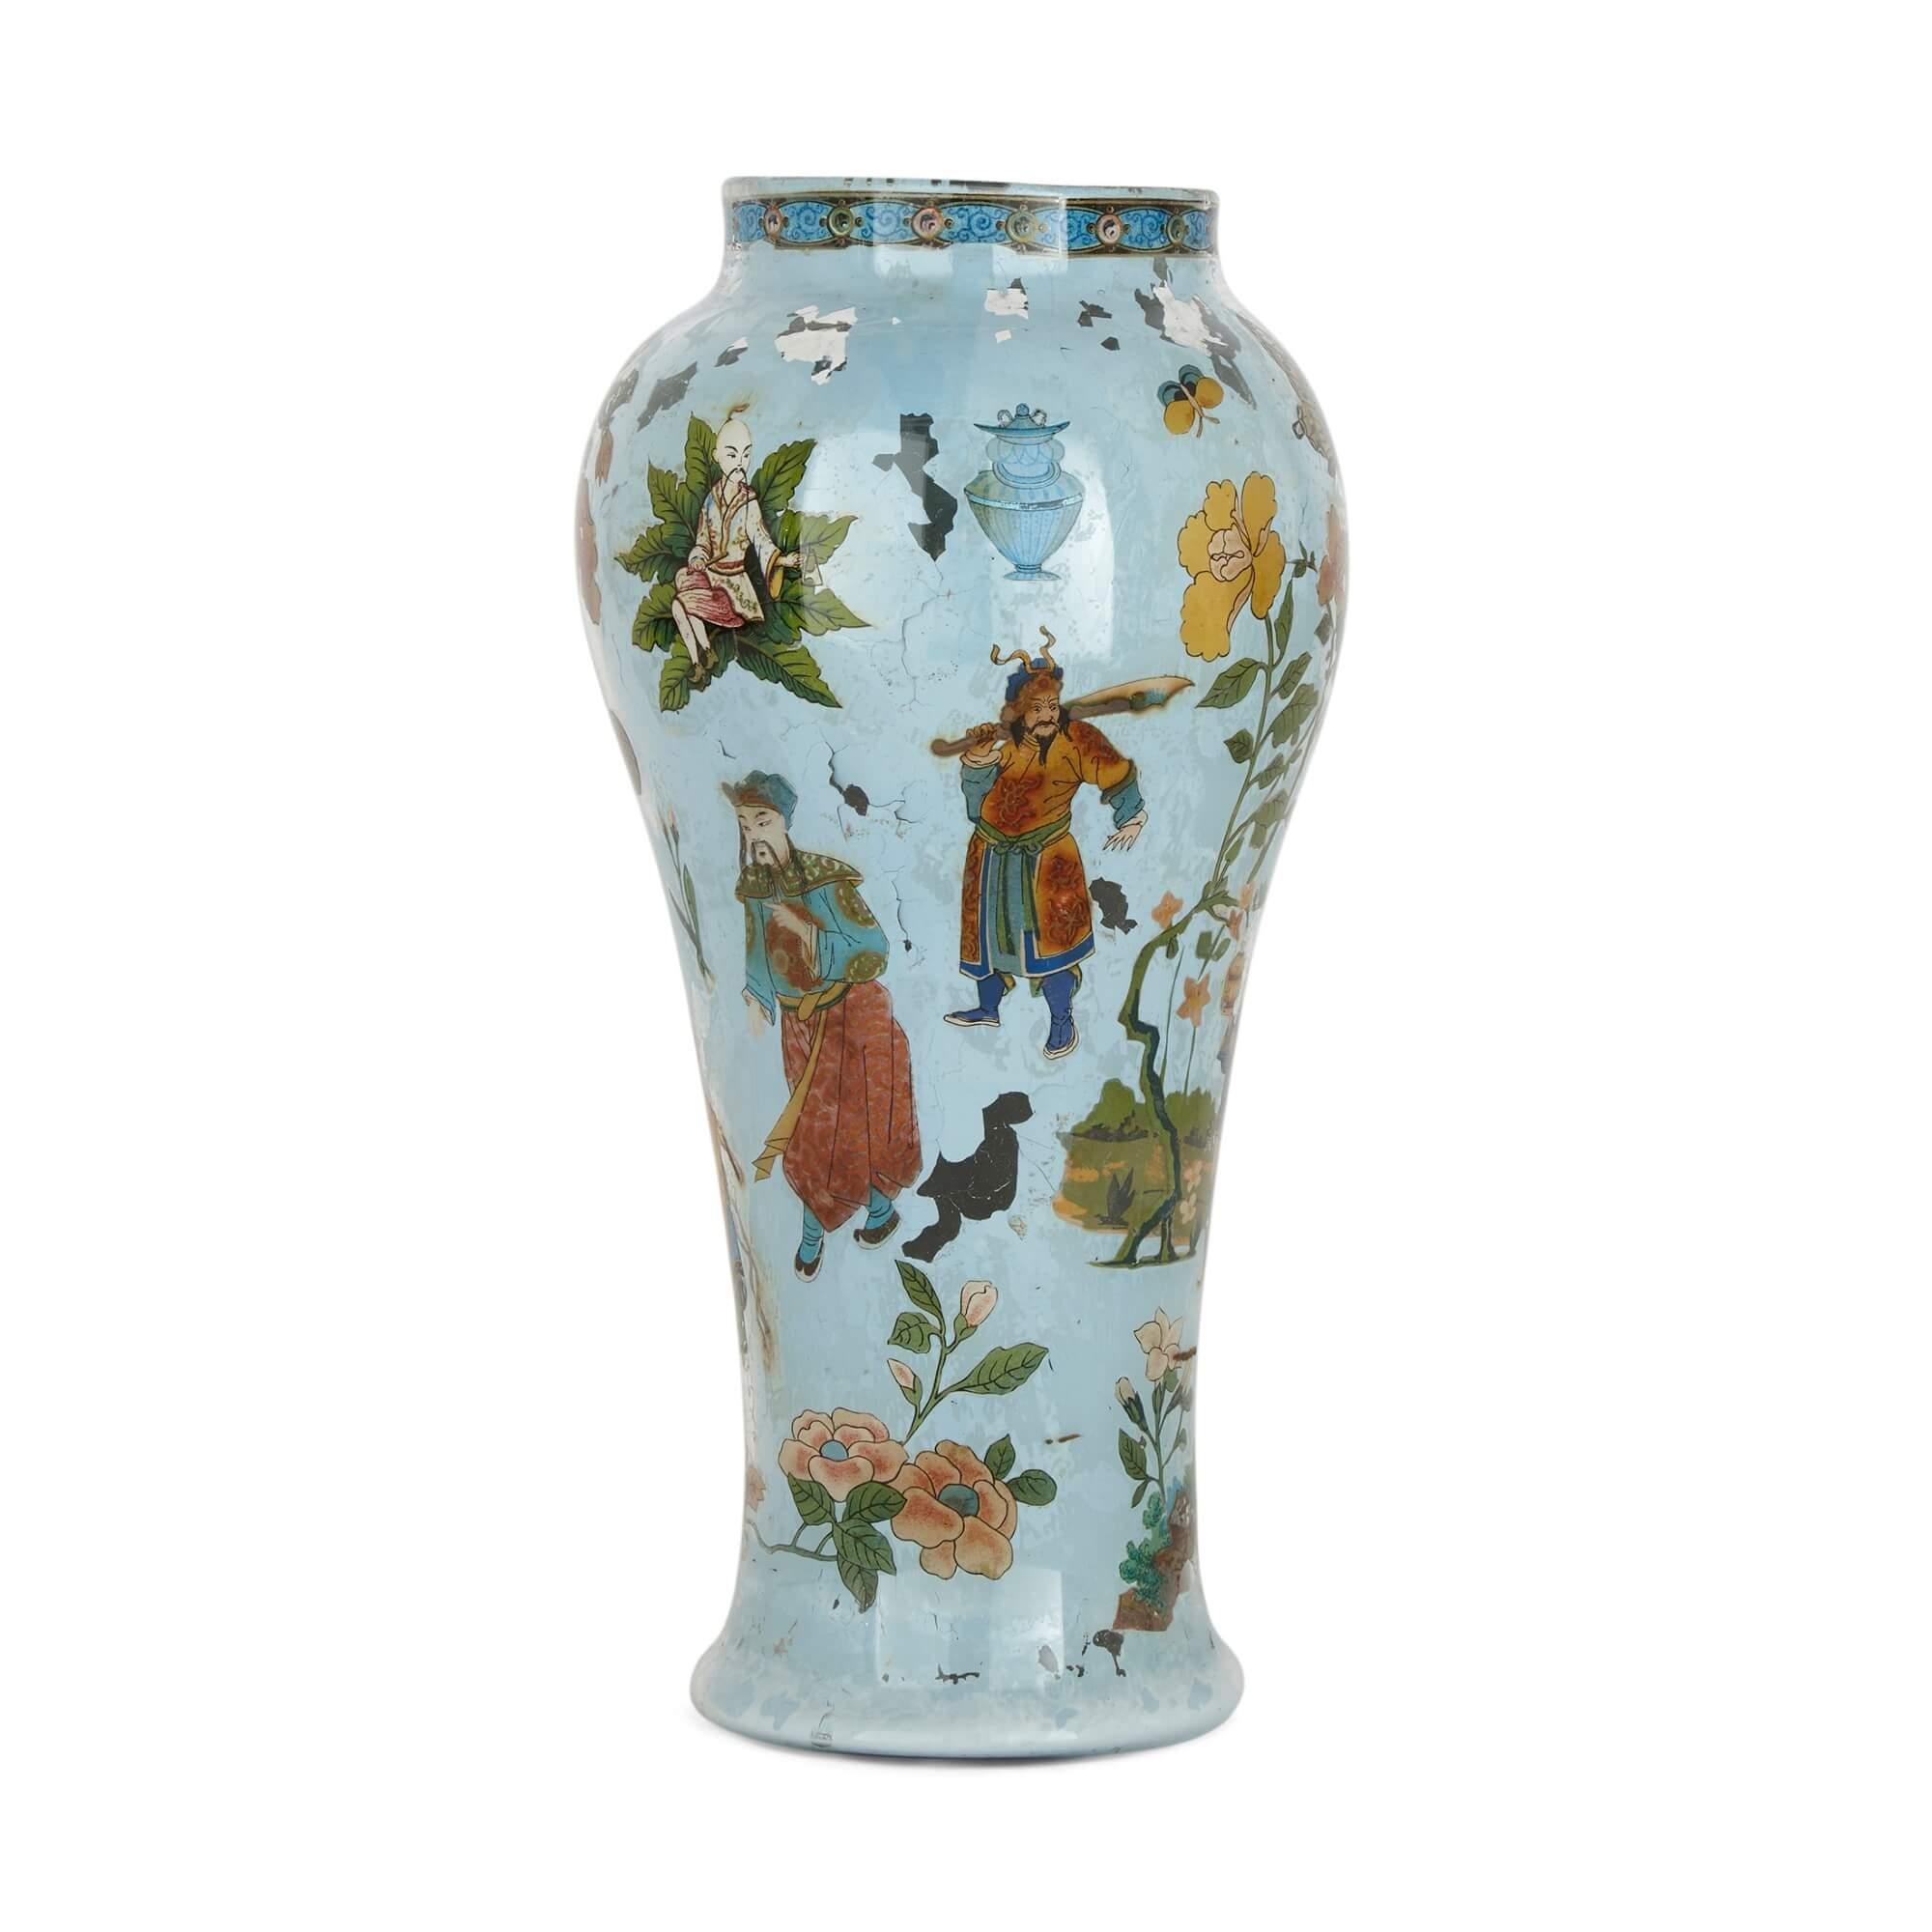 Réalisée dans le style populaire de la Chinoiserie du XVIIIe siècle, cette paire de vases italiens est fabriquée en verre soufflé et présente des corps allongés et incurvés. Les vases sont entièrement peints de fleurs, de papillons, de feuilles et